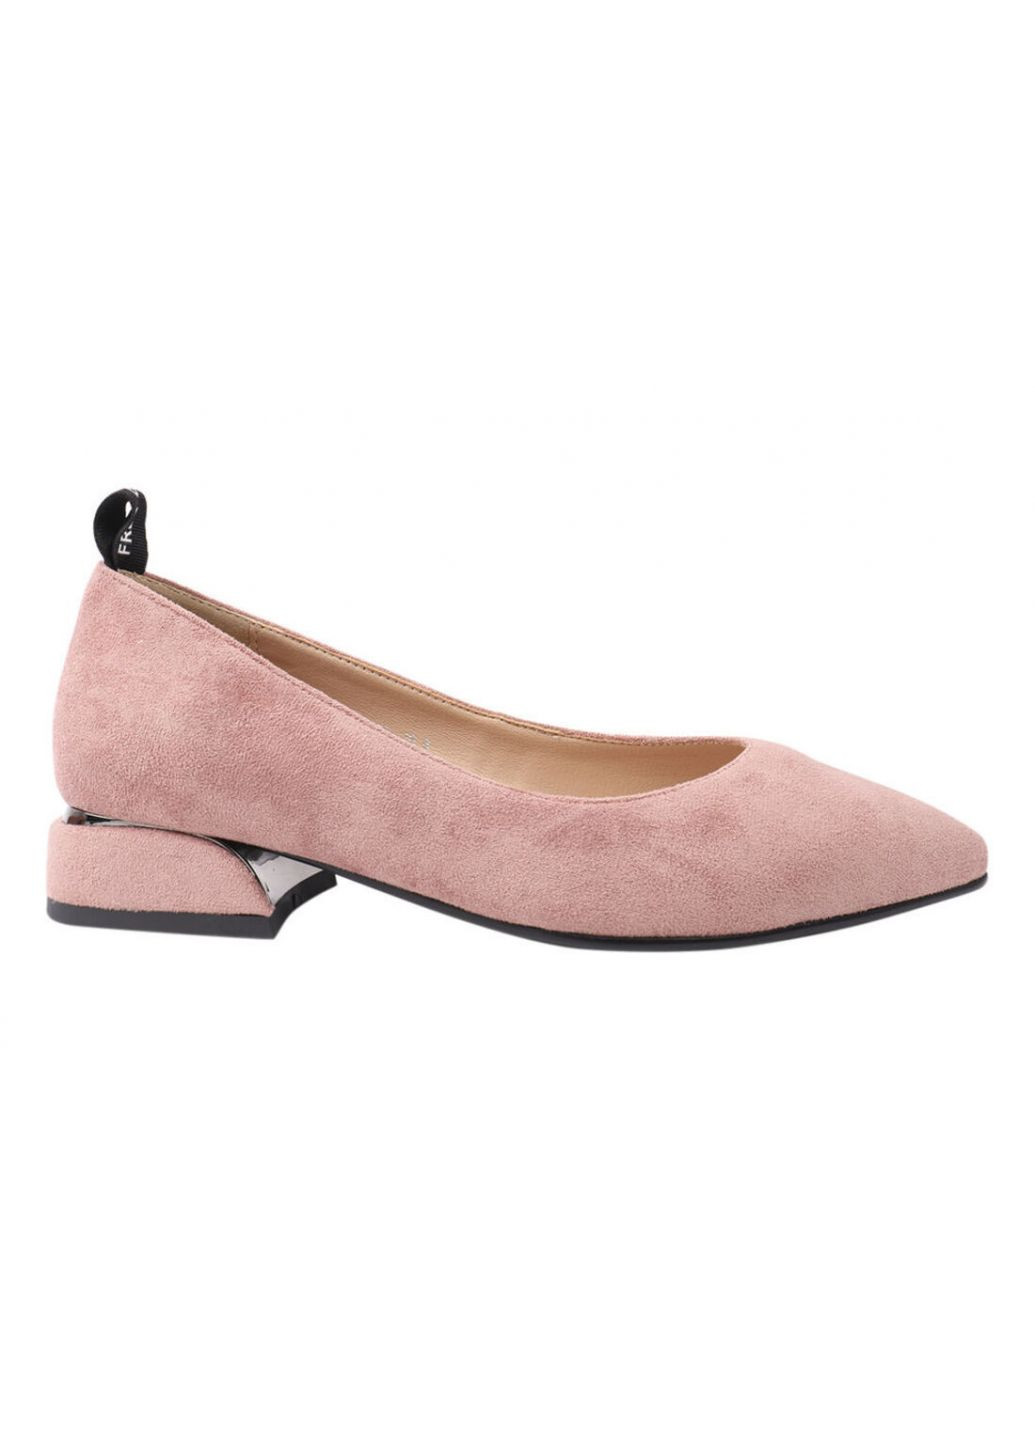 Туфли женские из эко замши, на низком ходу, розовые, LIICI